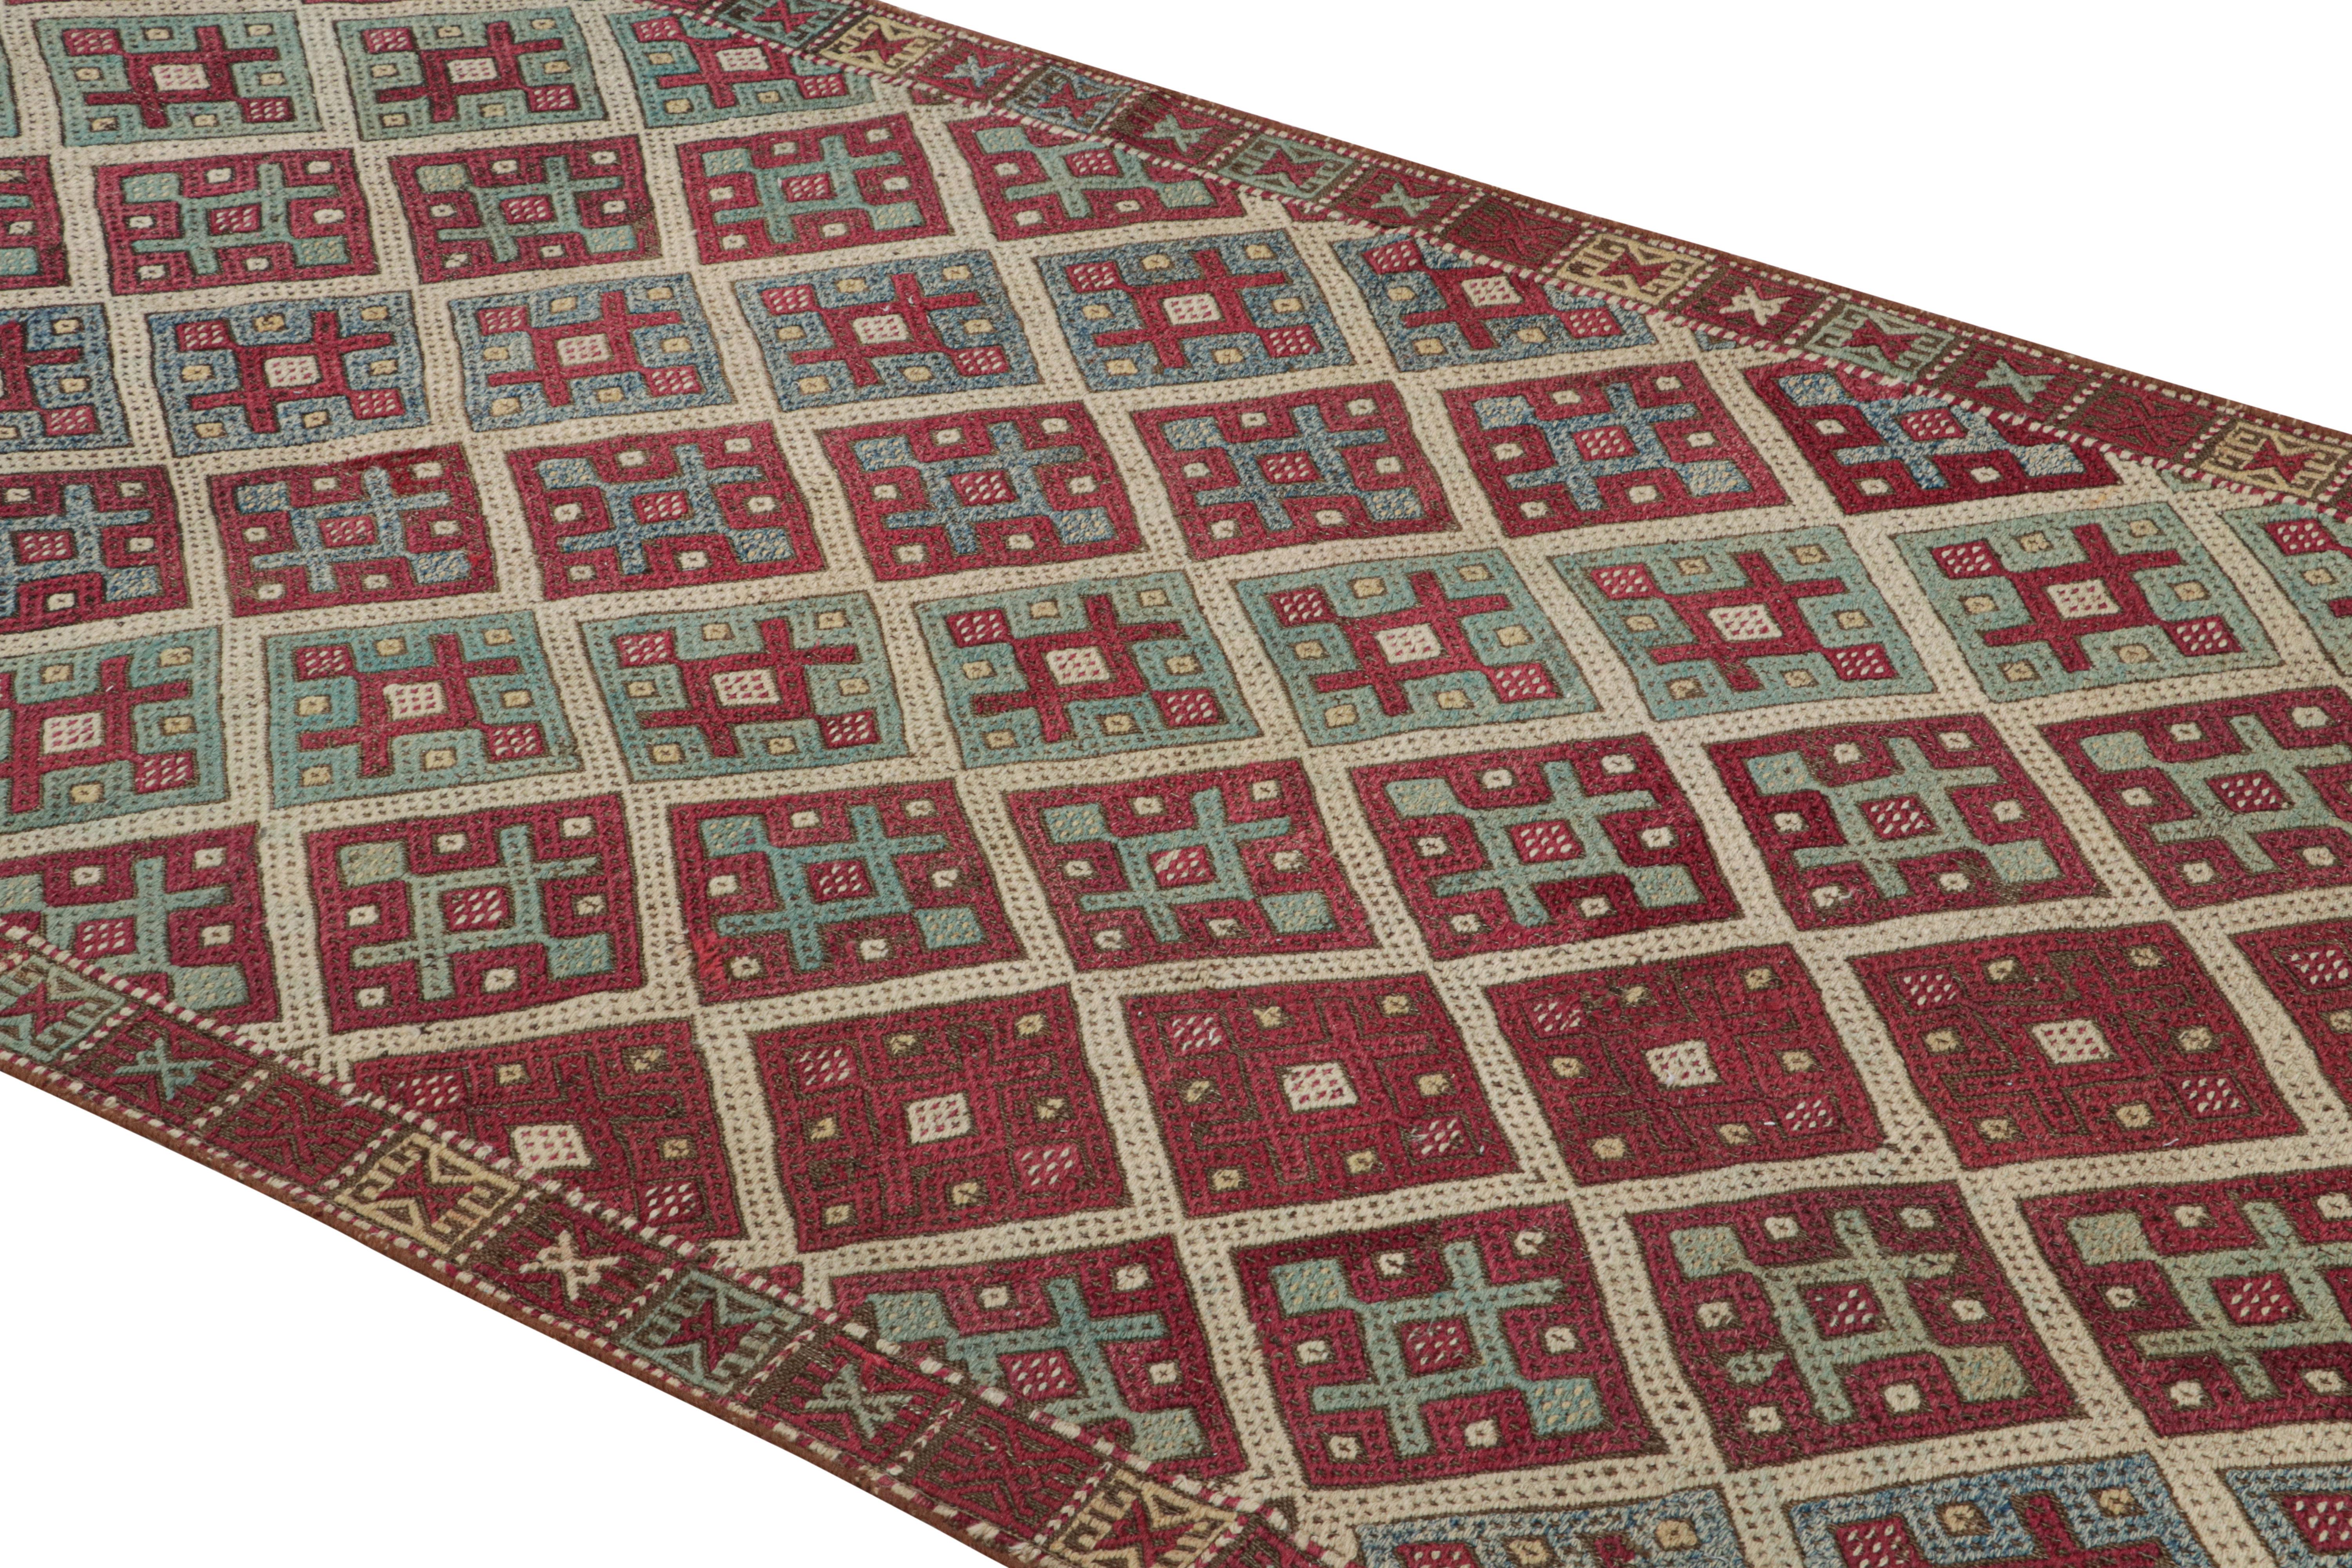 Originaire de Turquie en 1920, ce tapis kilim ancien en laine de transition présente une combinaison distincte de couleurs riches et fantaisistes pour compléter son symbolisme culturel. Tissé à plat dans une laine serrée et durable, les rangées